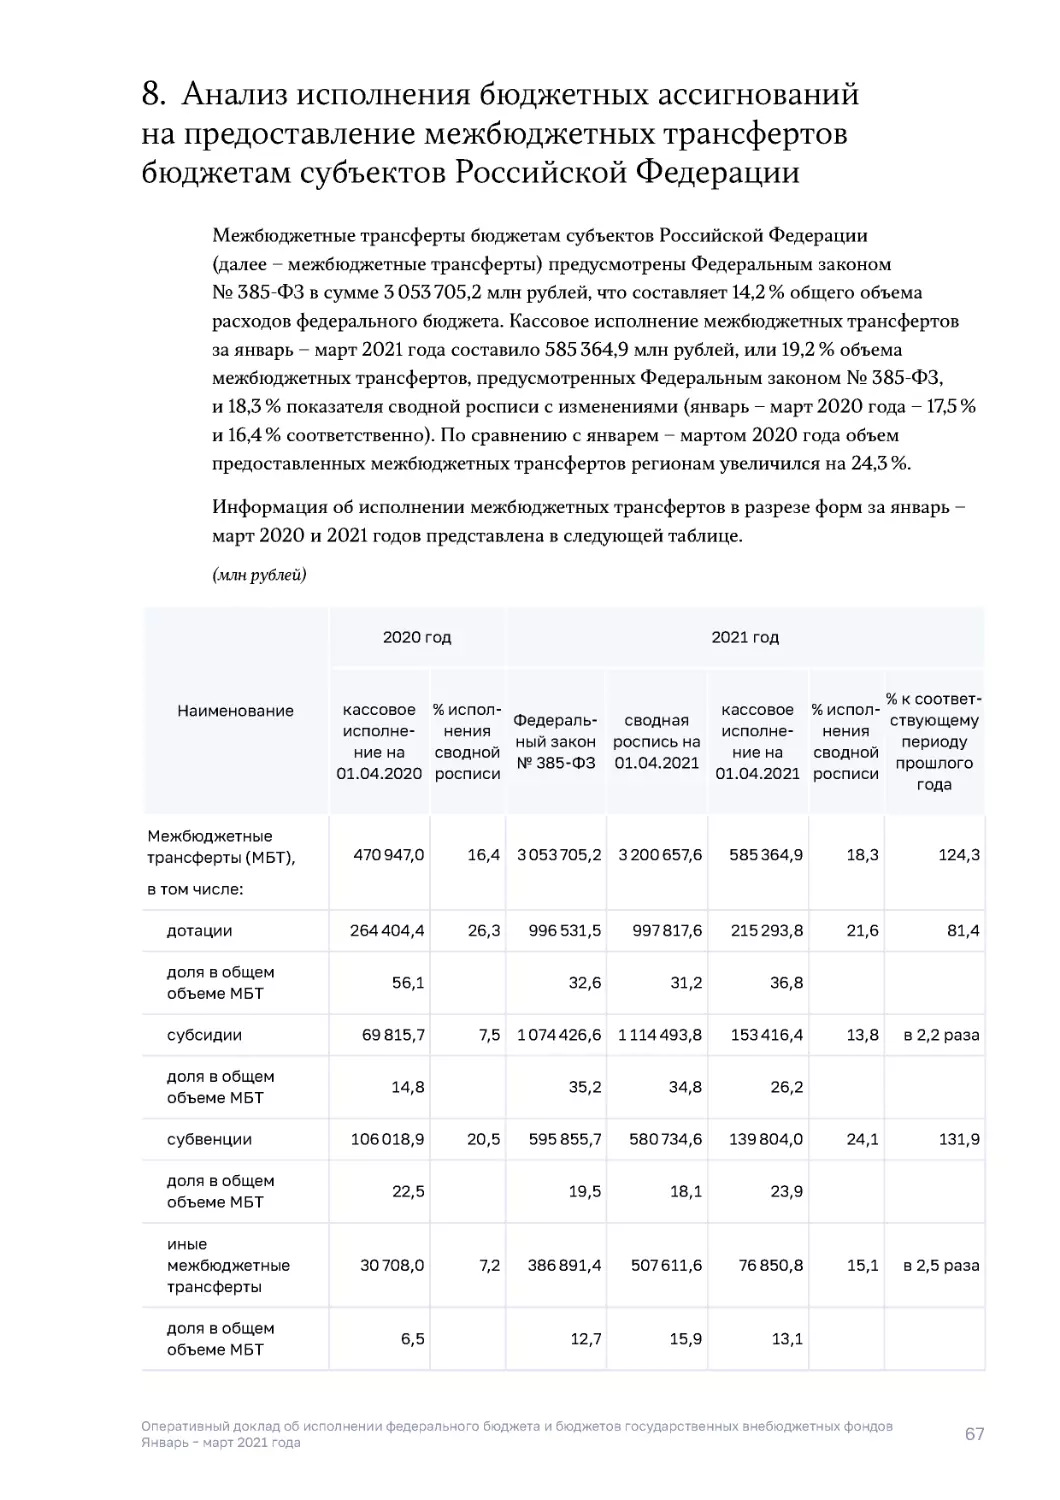 8. Анализ исполнения бюджетных ассигнований на предоставление межбюджетных трансфертов бюджетам субъектов Российской Федерации